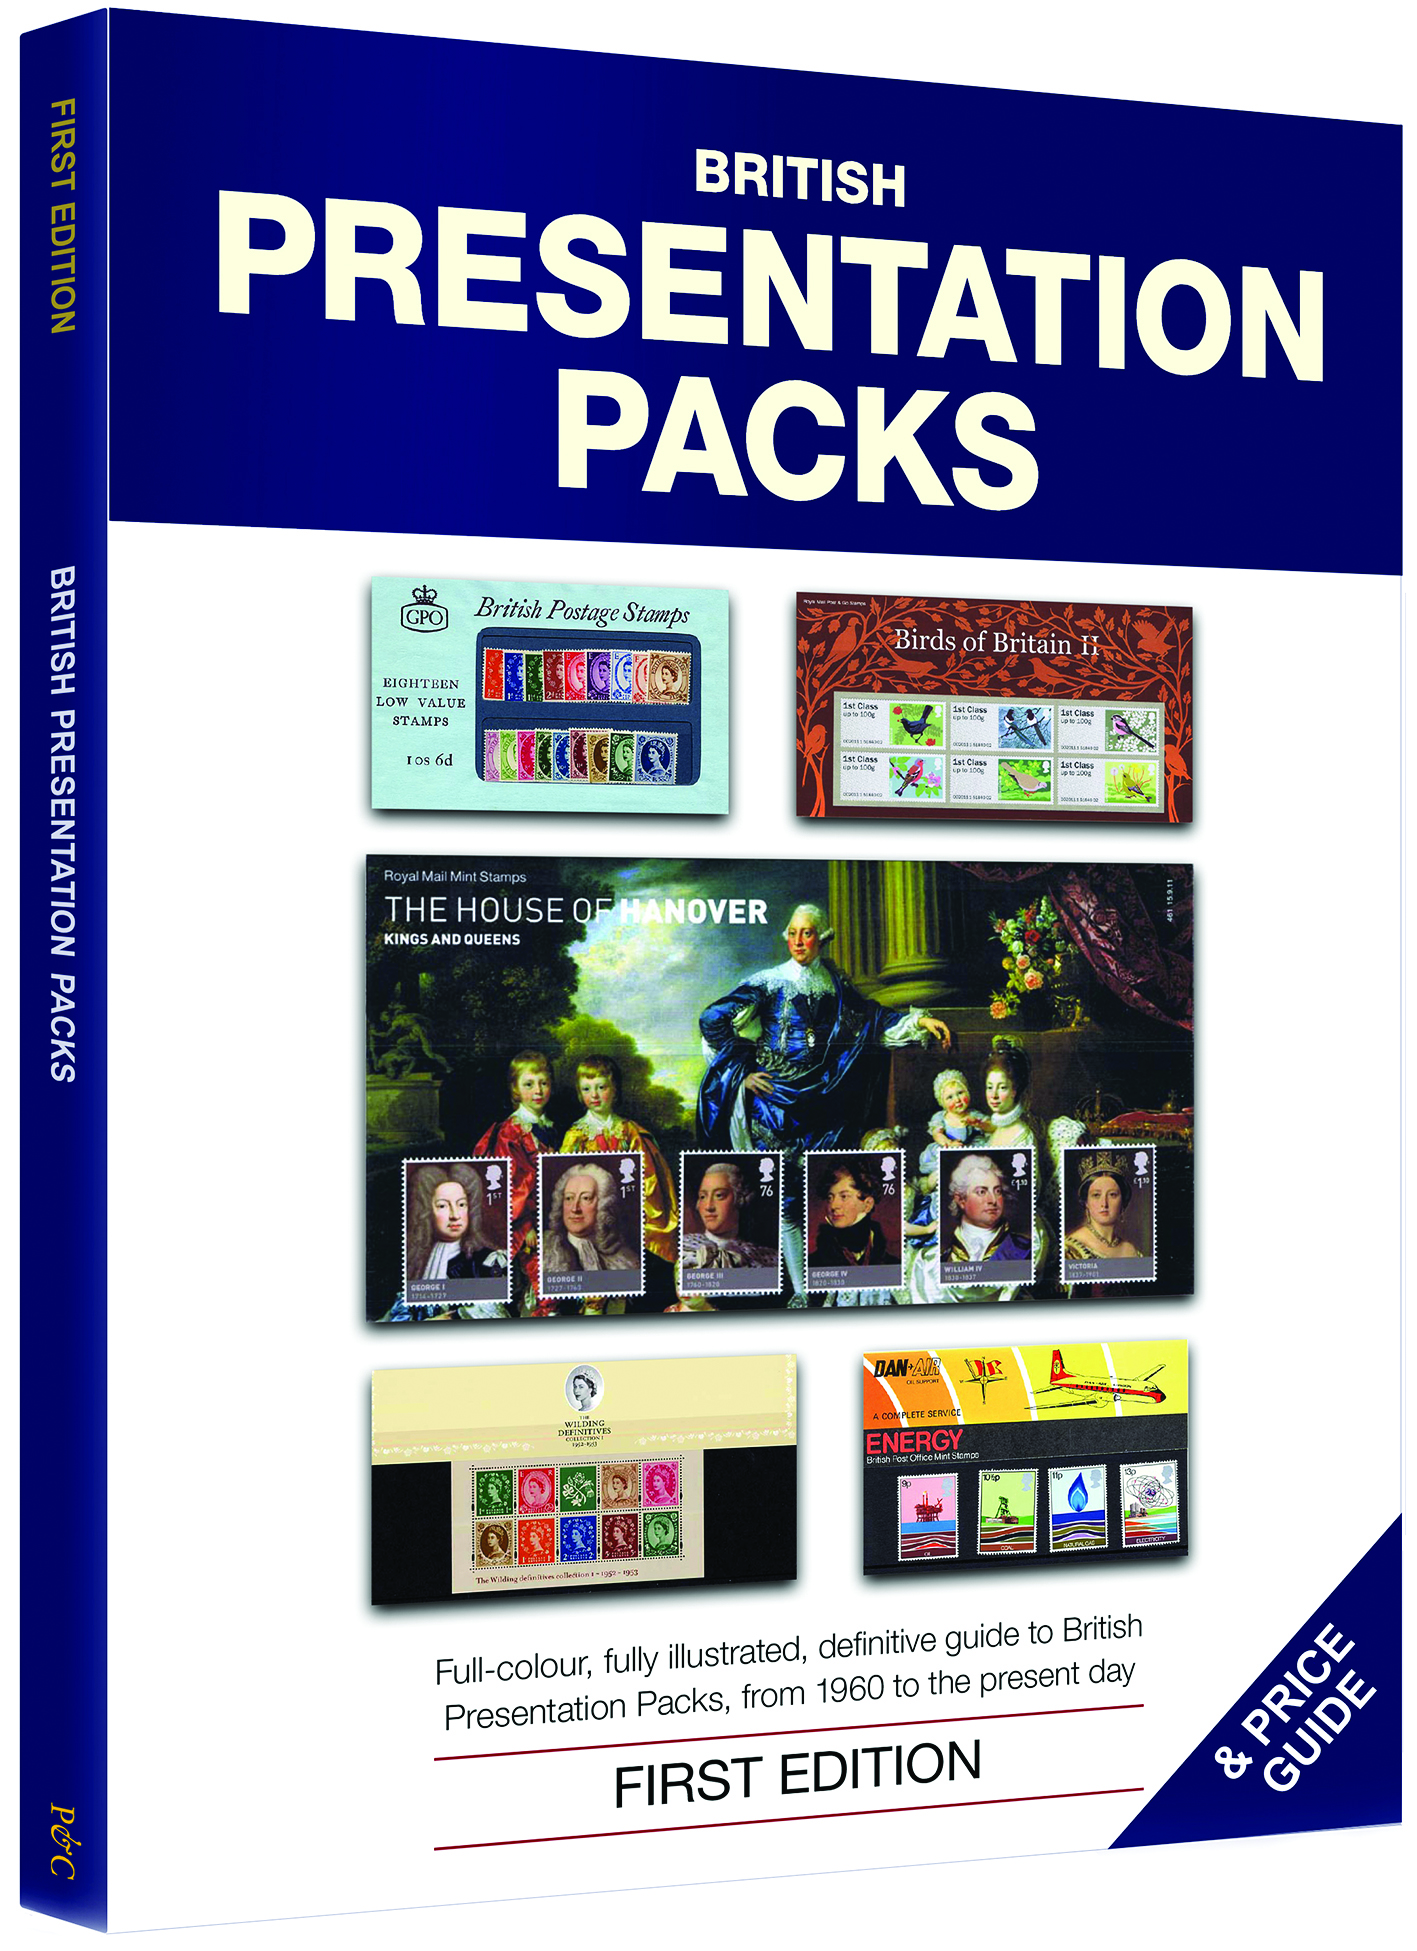 presentation packs catalogue